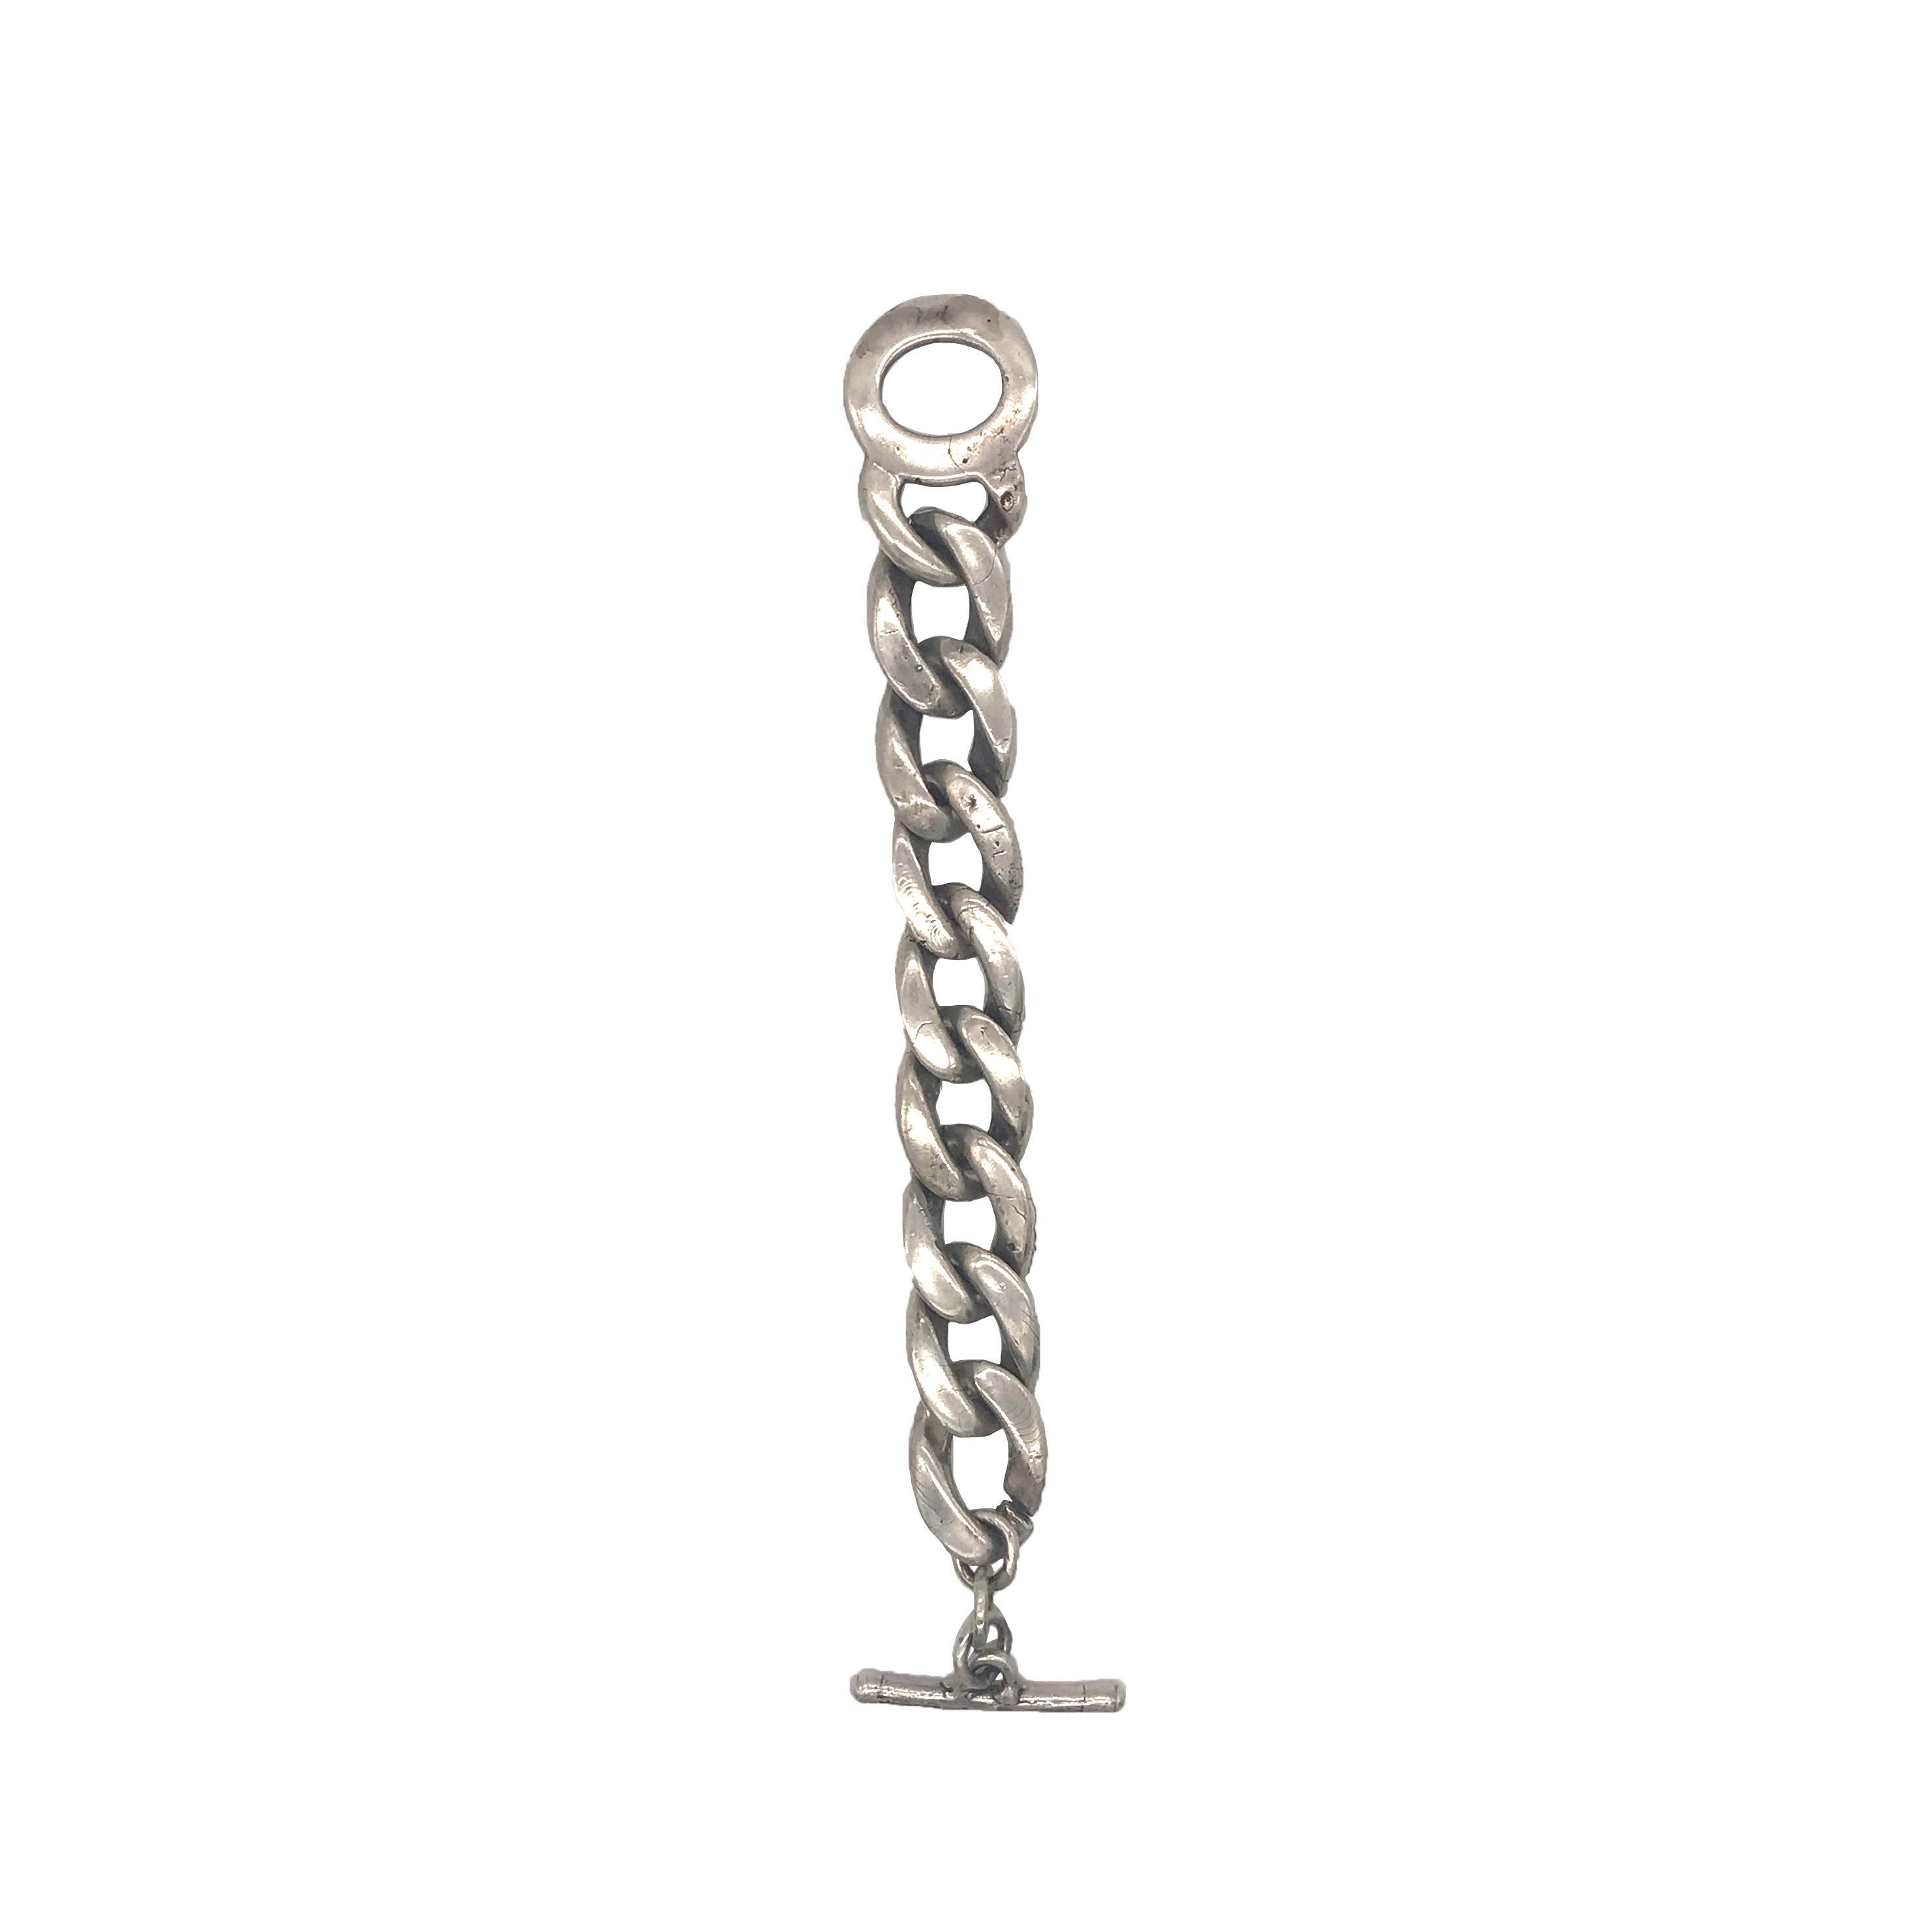 Curb Chain Bracelet